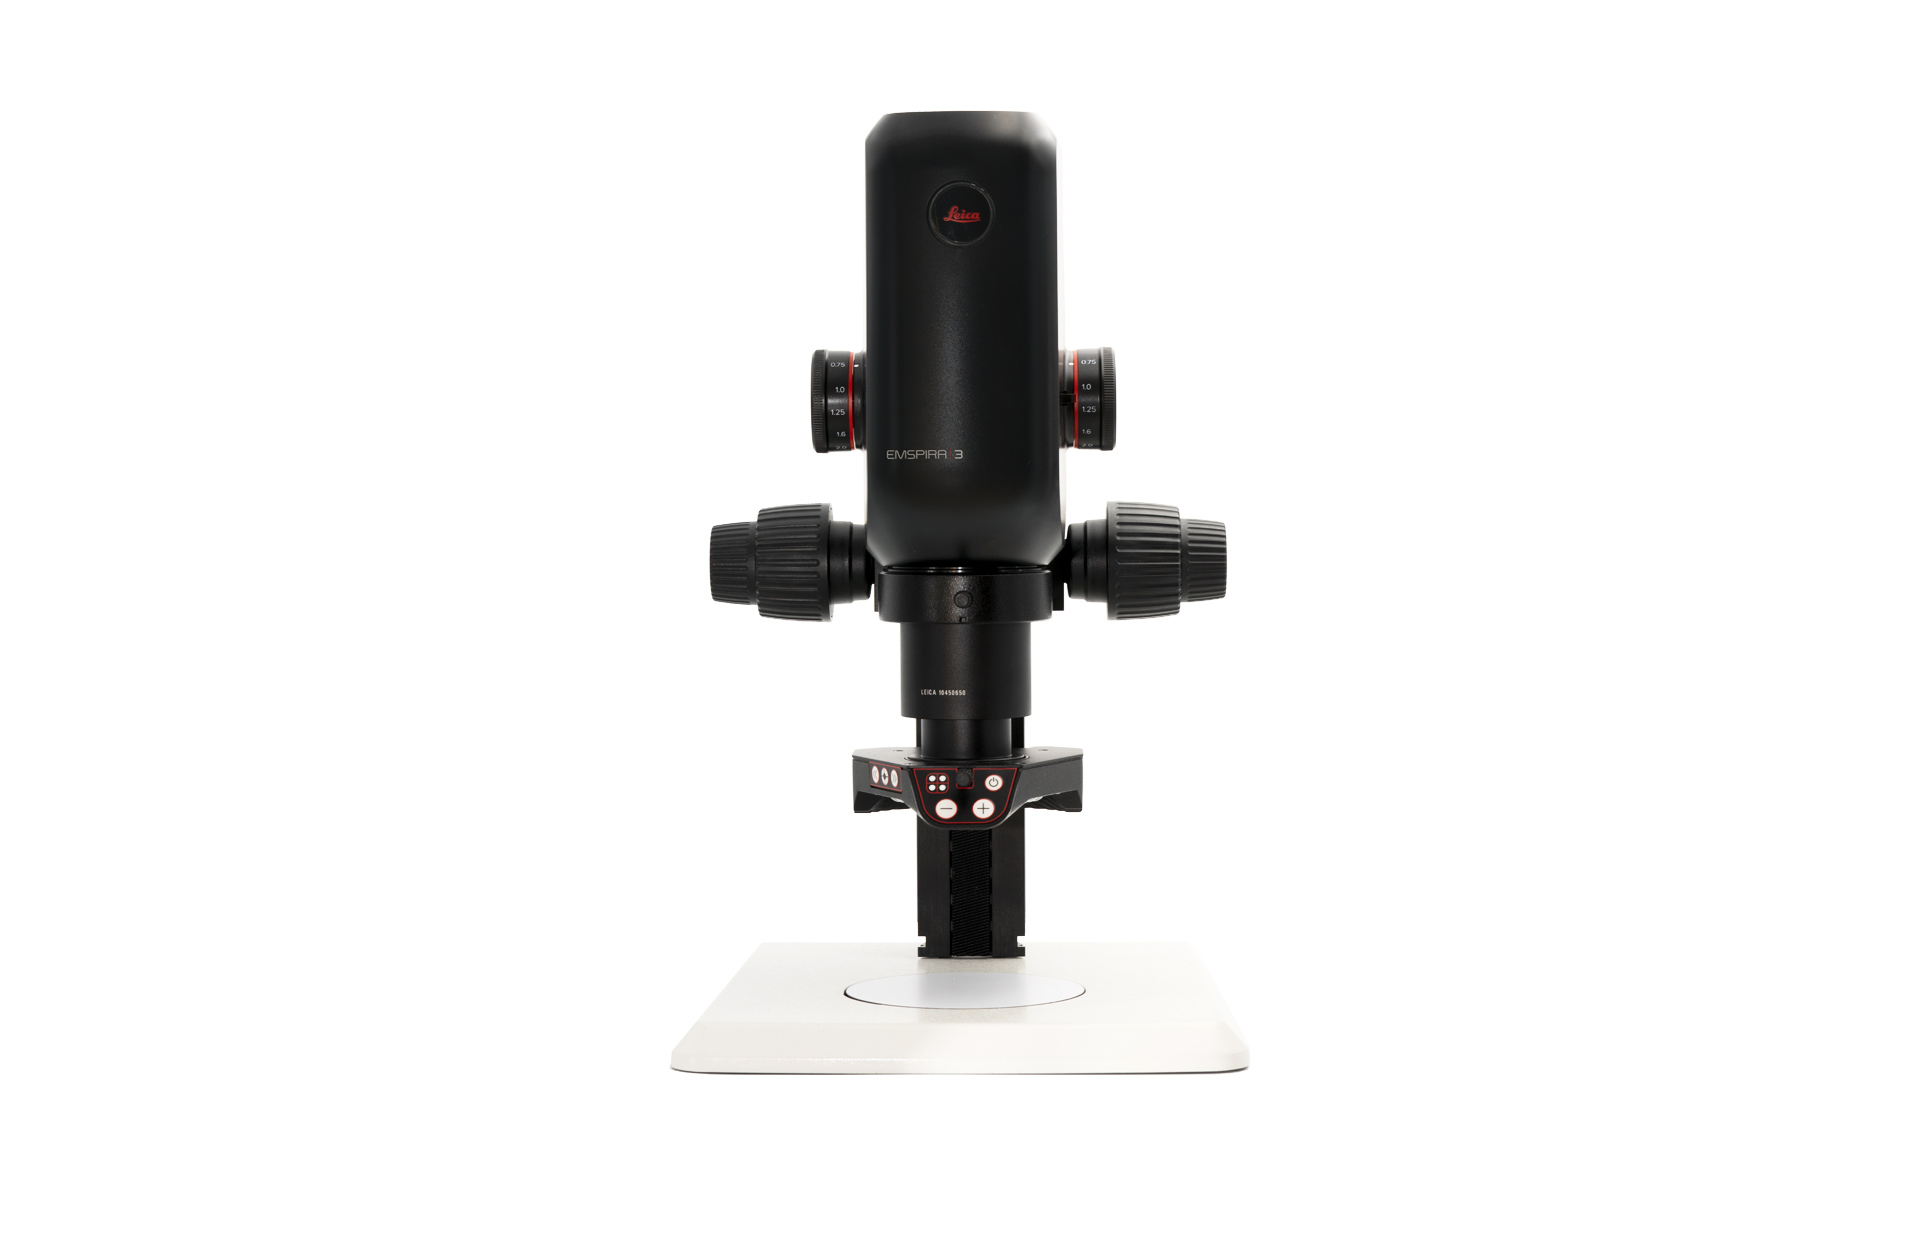 Leica Emspira-3 Digitalmikroskop